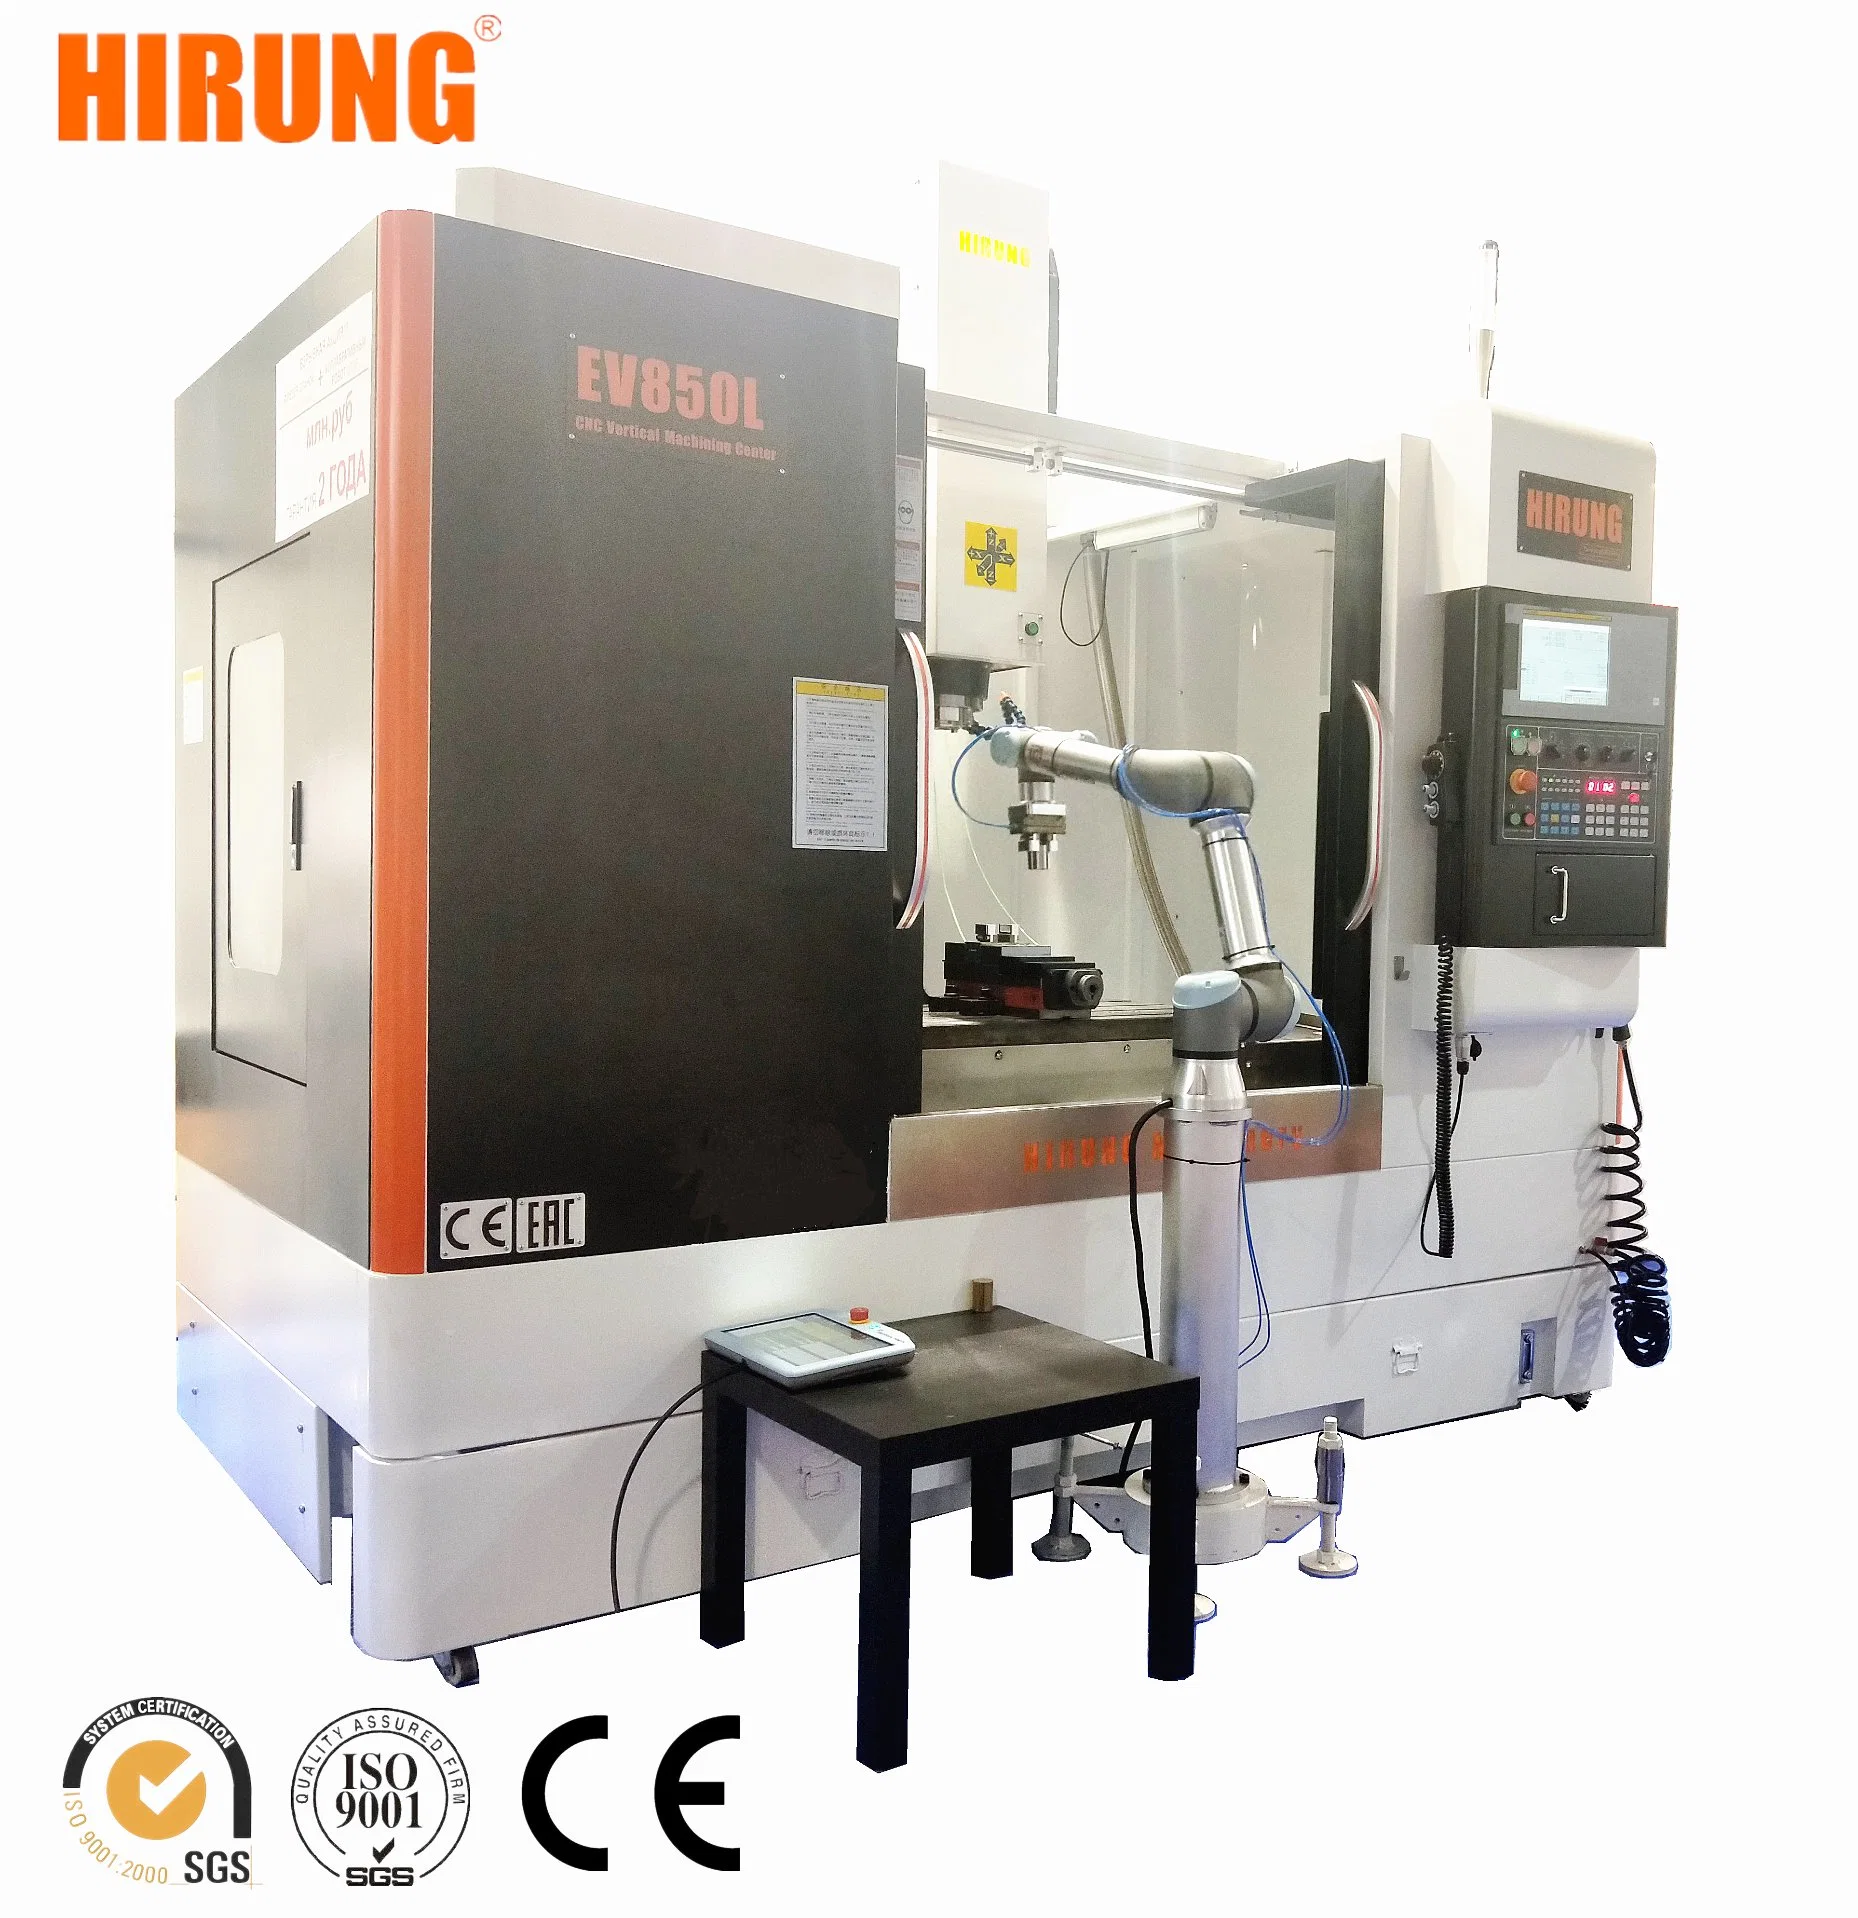 2022 Popular High Speed CNC Vertical Machining Center, CNC Milling Machine, CNC Vertical Milling Machine (EV850L)